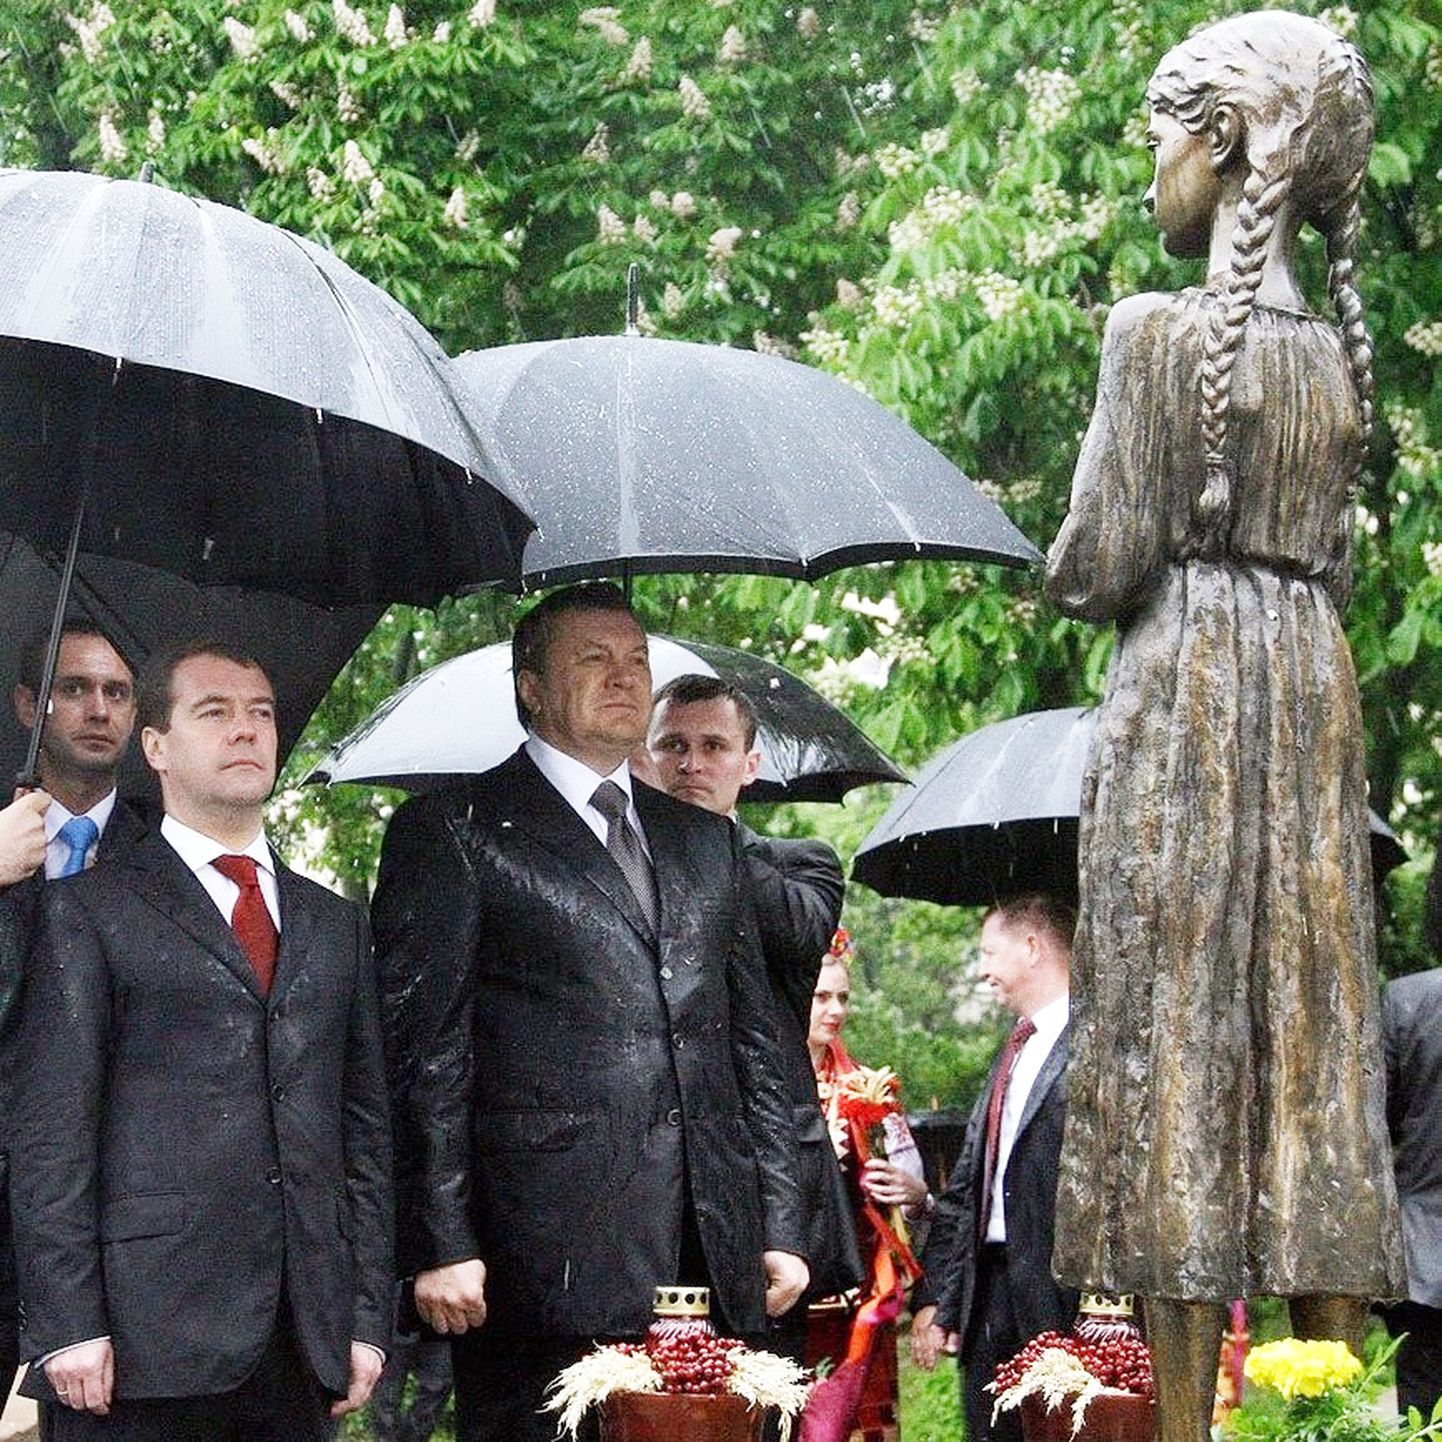 Президент России Дмитрий Медведев и президент Украины Виктор Янукович почтили память жертв Голодомора в Украине, поставив горящие лампады к подножию памятника, посвящённого этой трагедии. Киев, 18 мая 2019 года.